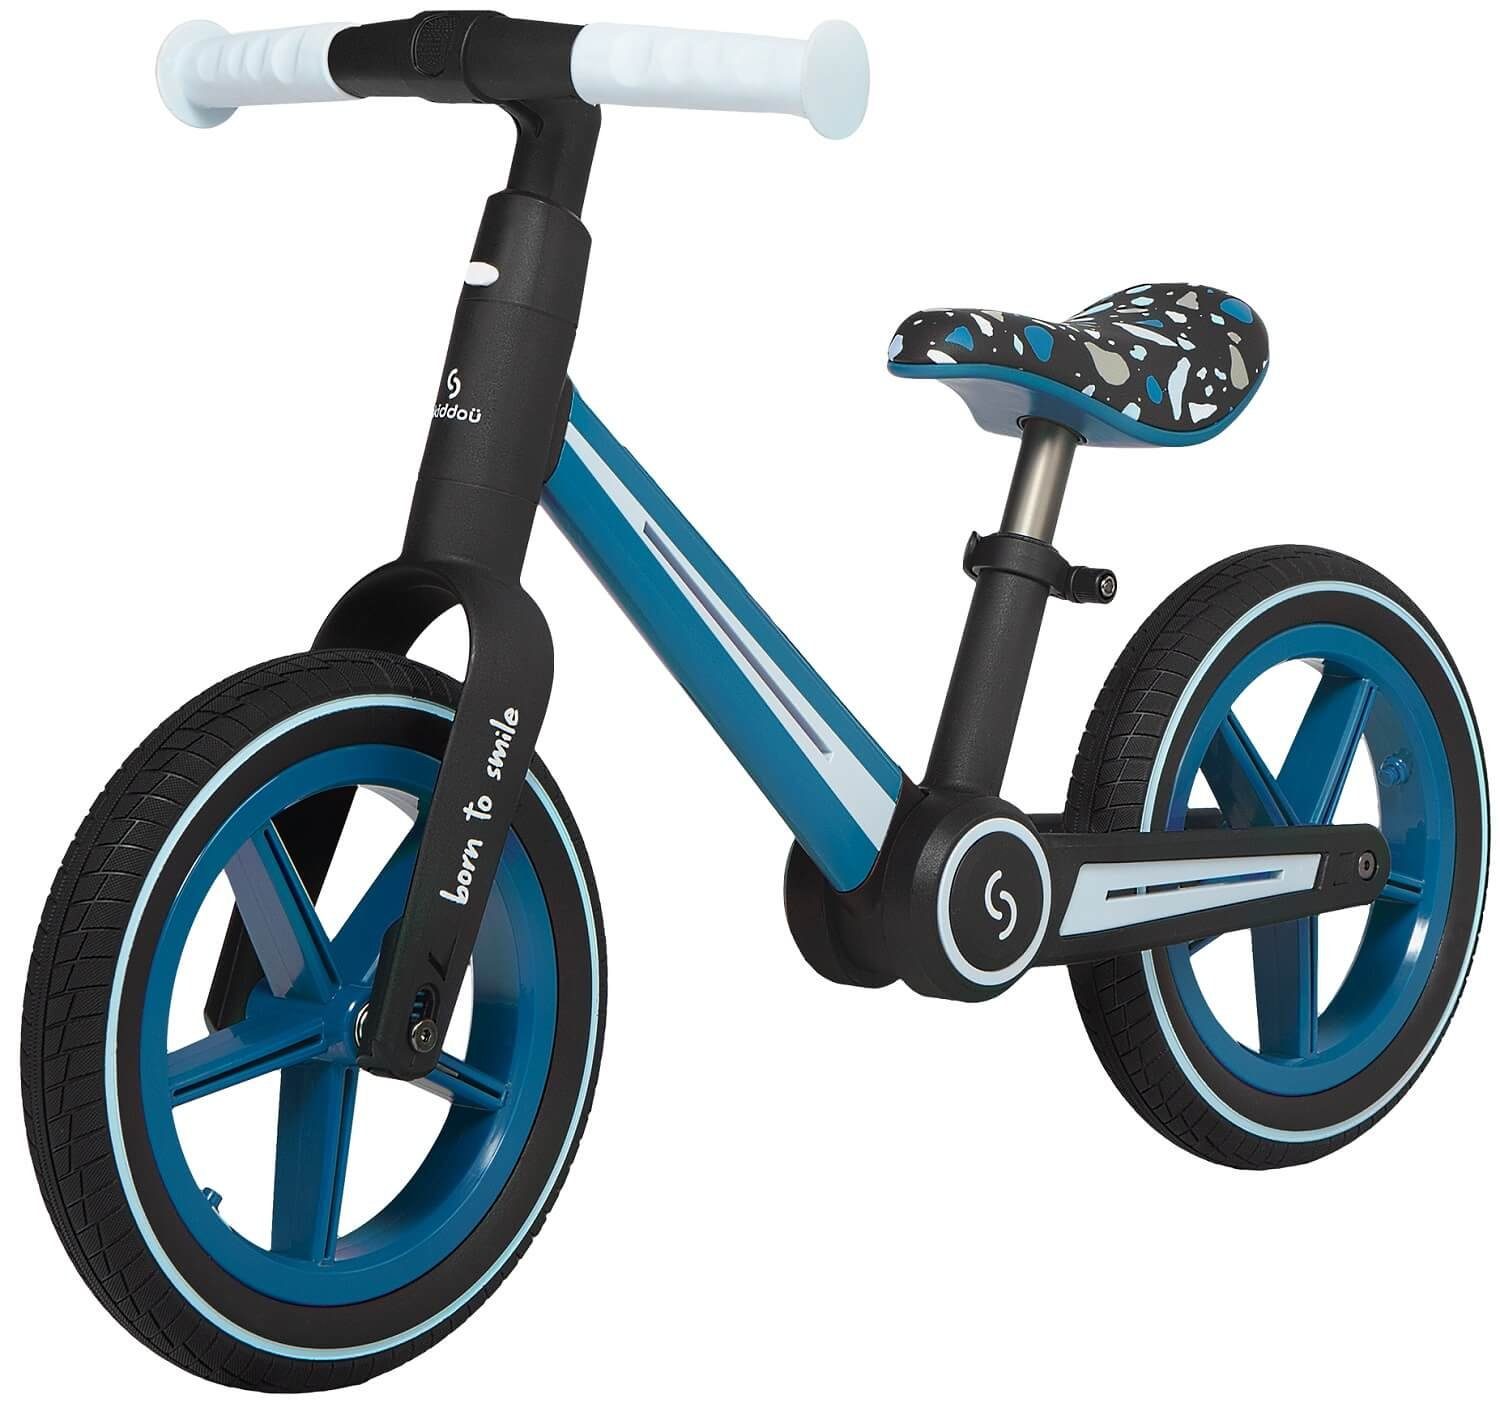 Skiddoü Laufrad Ronny faltbares Laufrad für Kinder bis 30 kg verstellbar in 3 Farben 12 Zoll, inkl. Malbuch blau